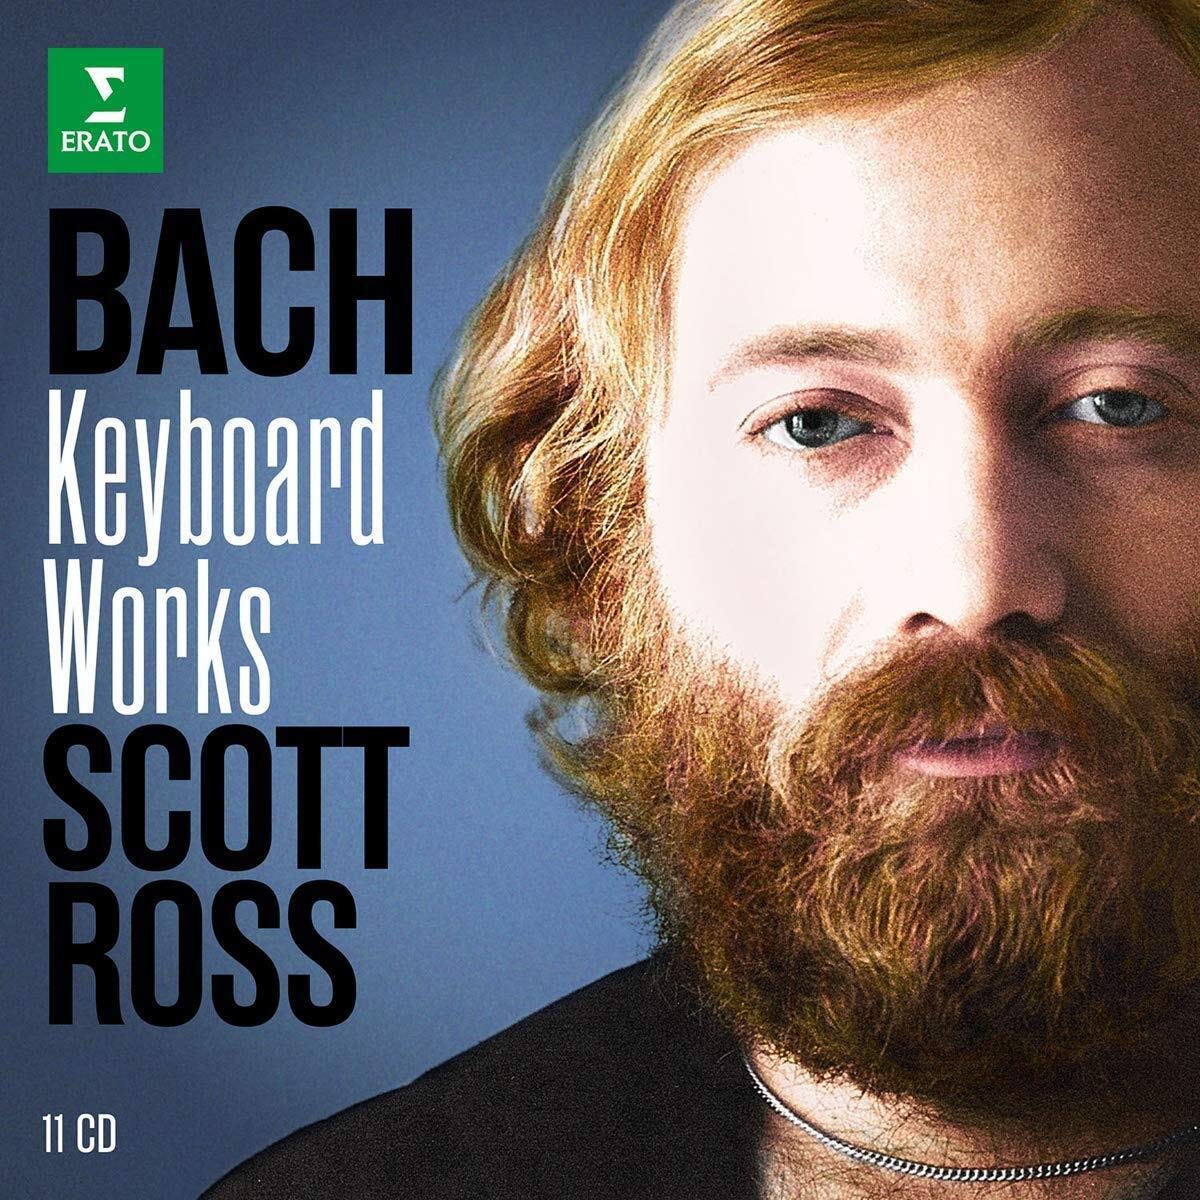 BACH: KEYBOARD WORKS - SCOTT ROSS (11 CDS)